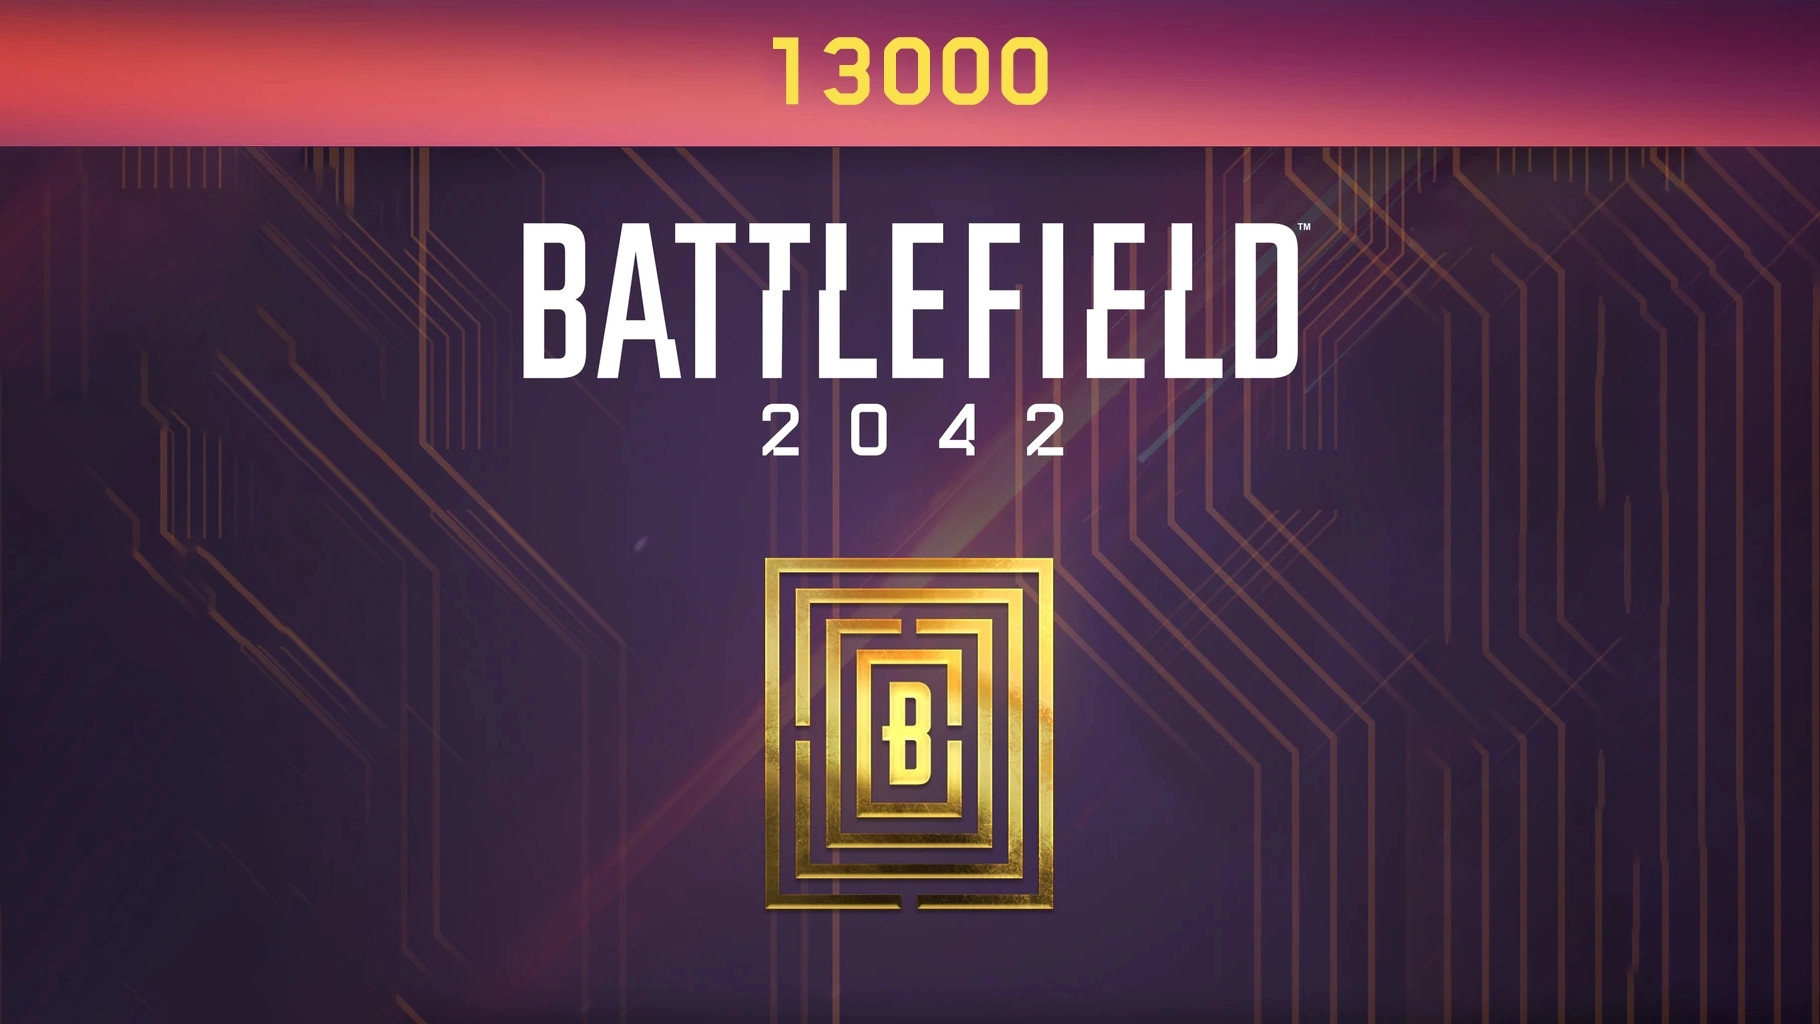 Battlefield 2042 - 13000 BFC Balance XBOX One / Xbox Series X|S CD Key (96.6$)